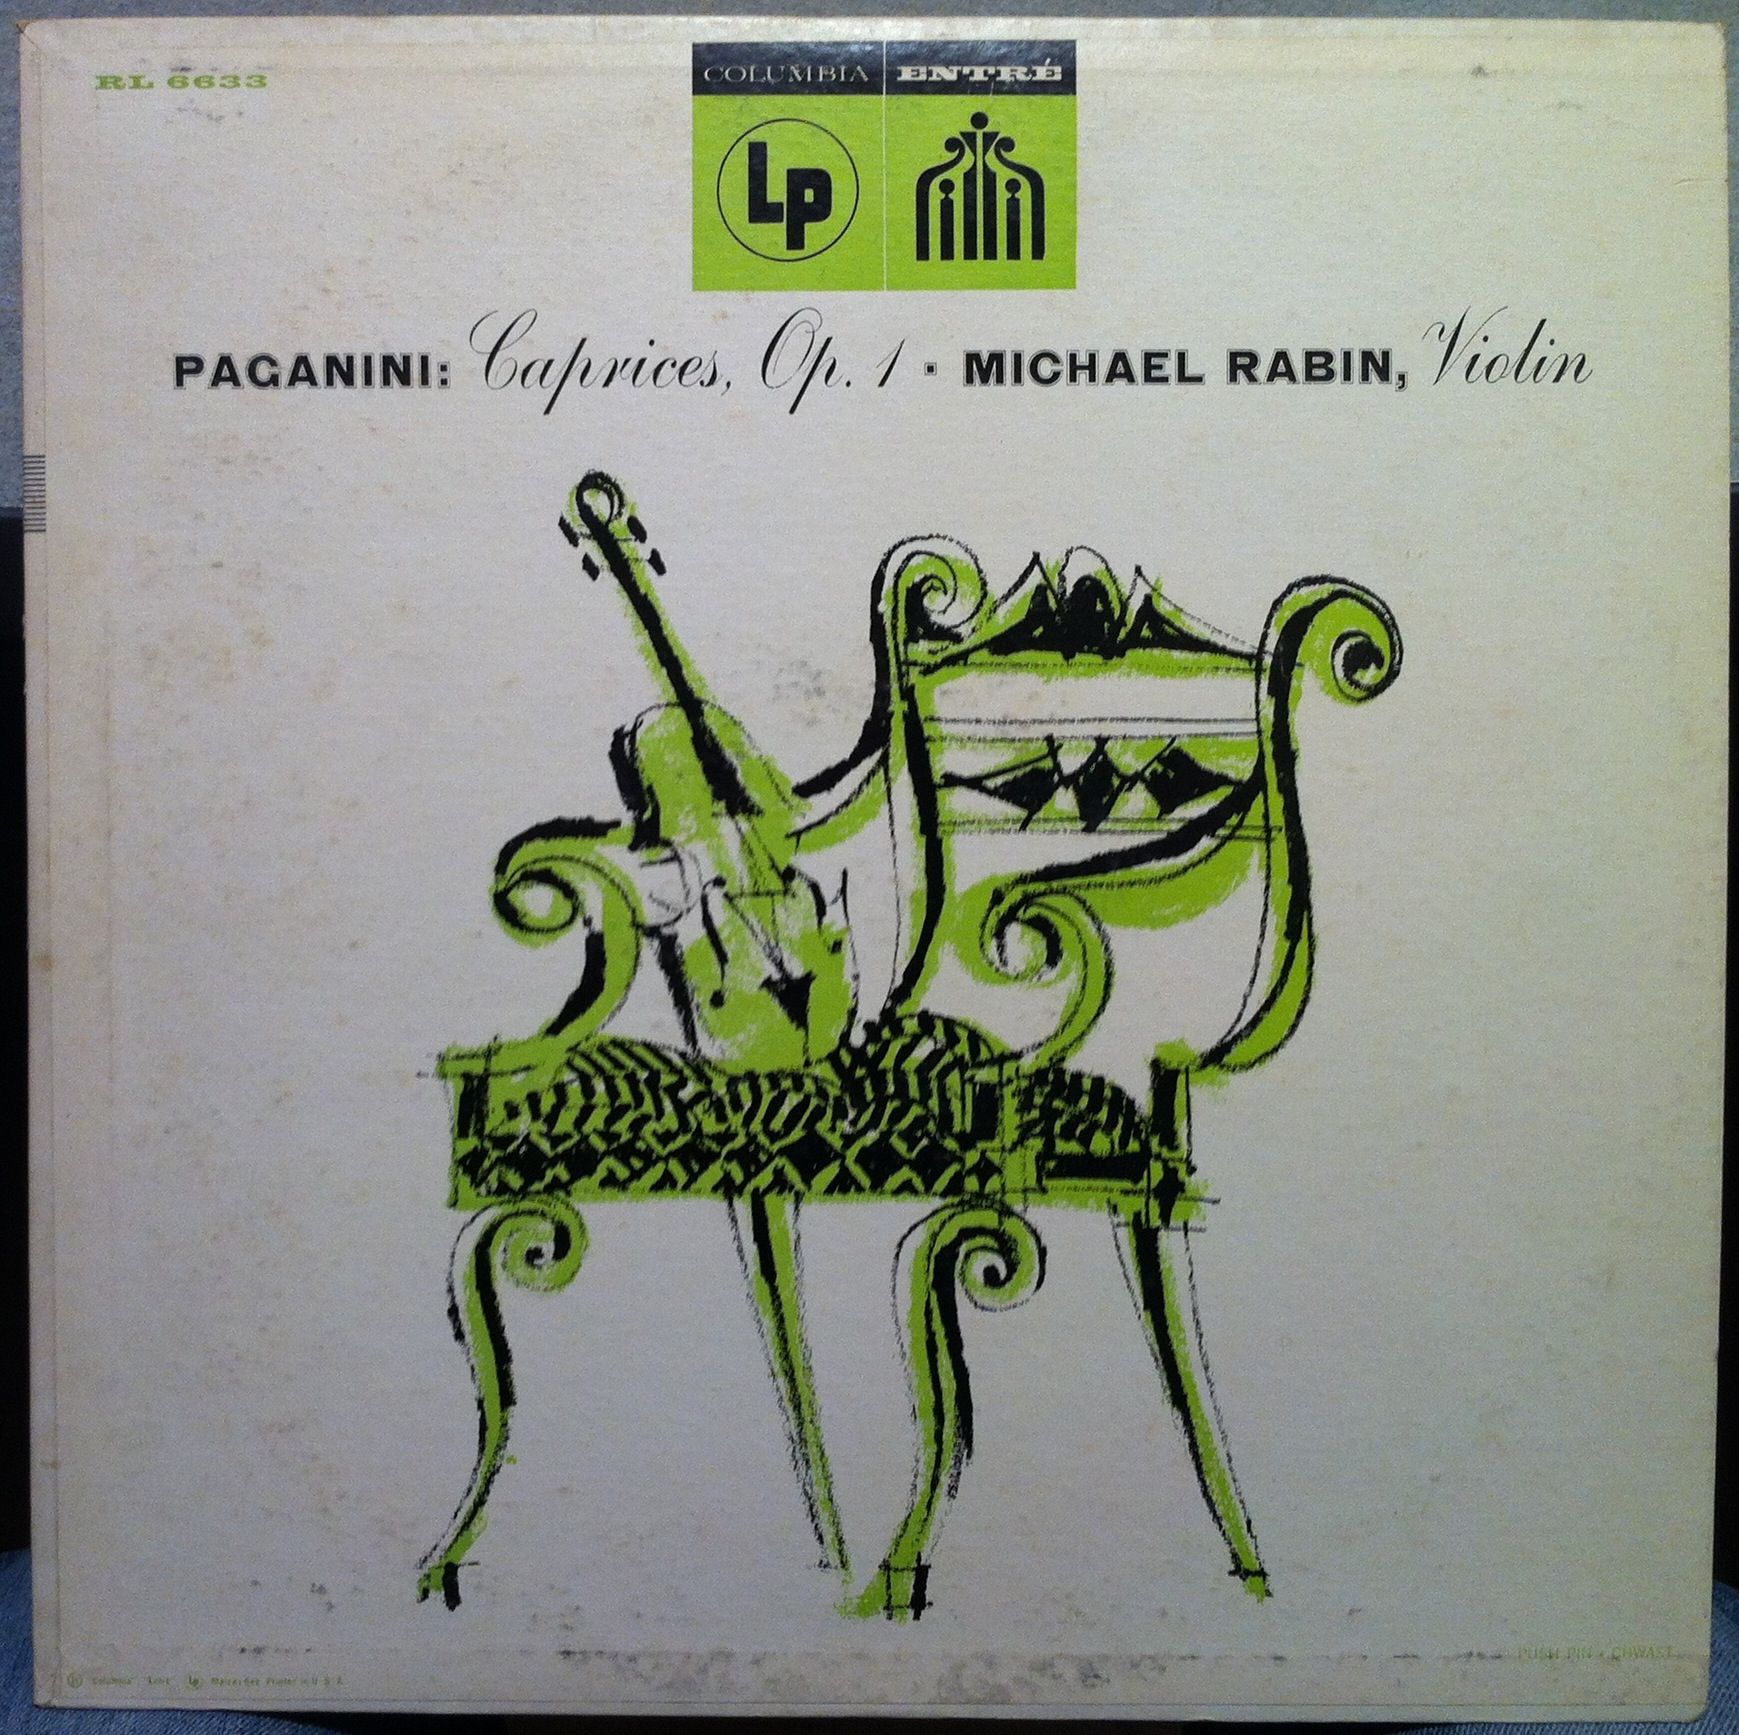 MICHAEL RABIN paganini caprices op 1 LP VG+ RL 6633 Vinyl ORIG DG Rare